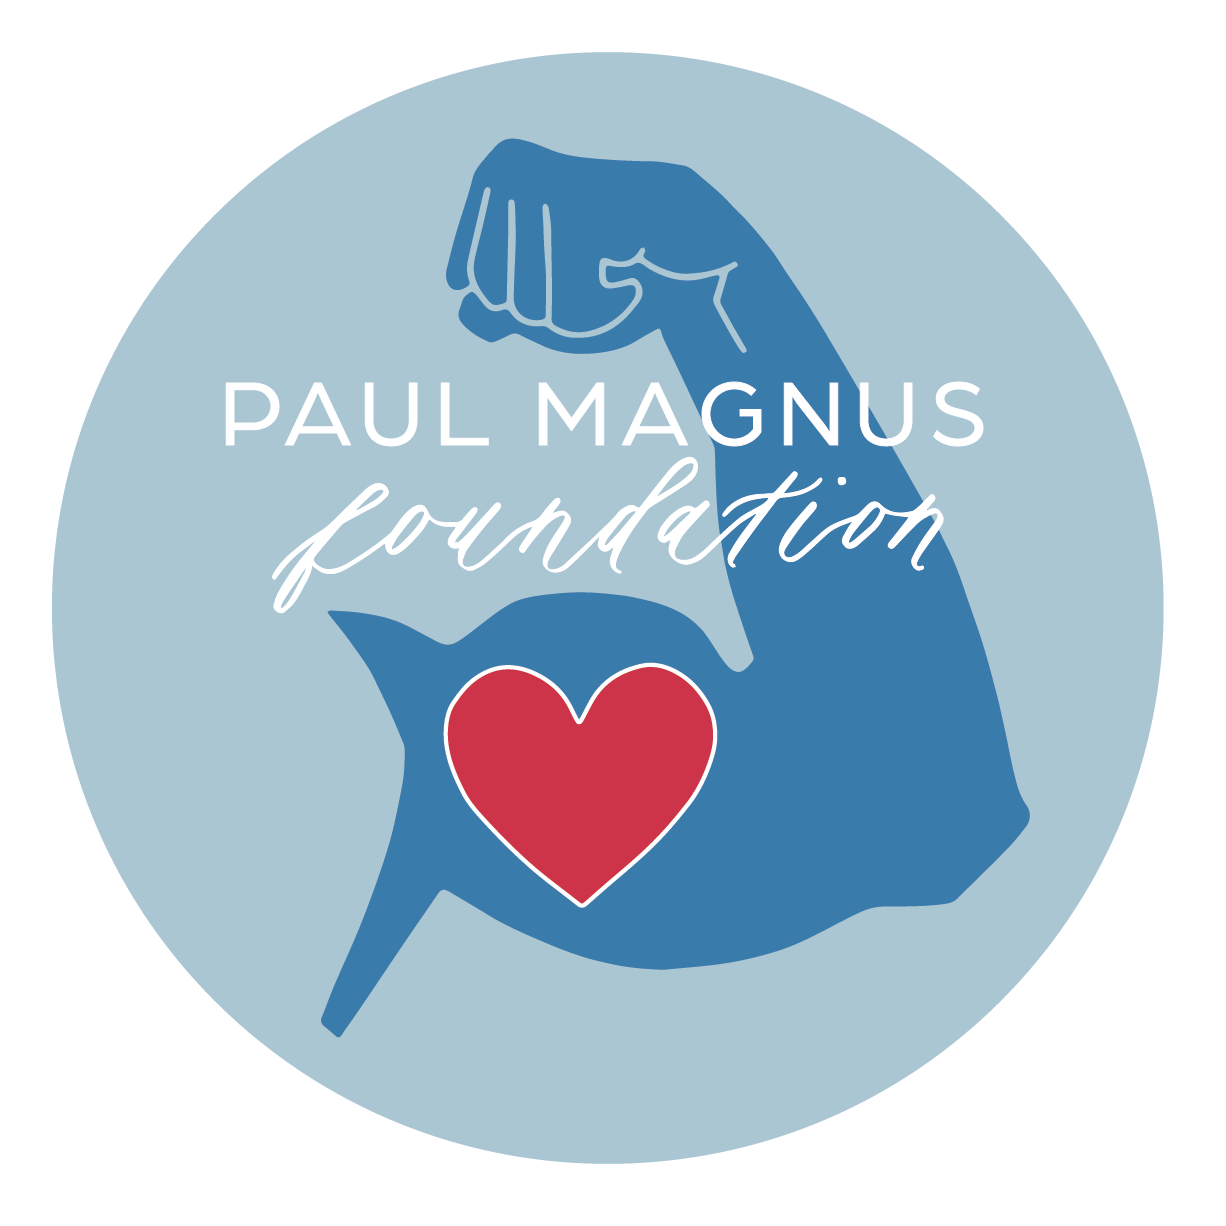 Paul Magnus Foundation